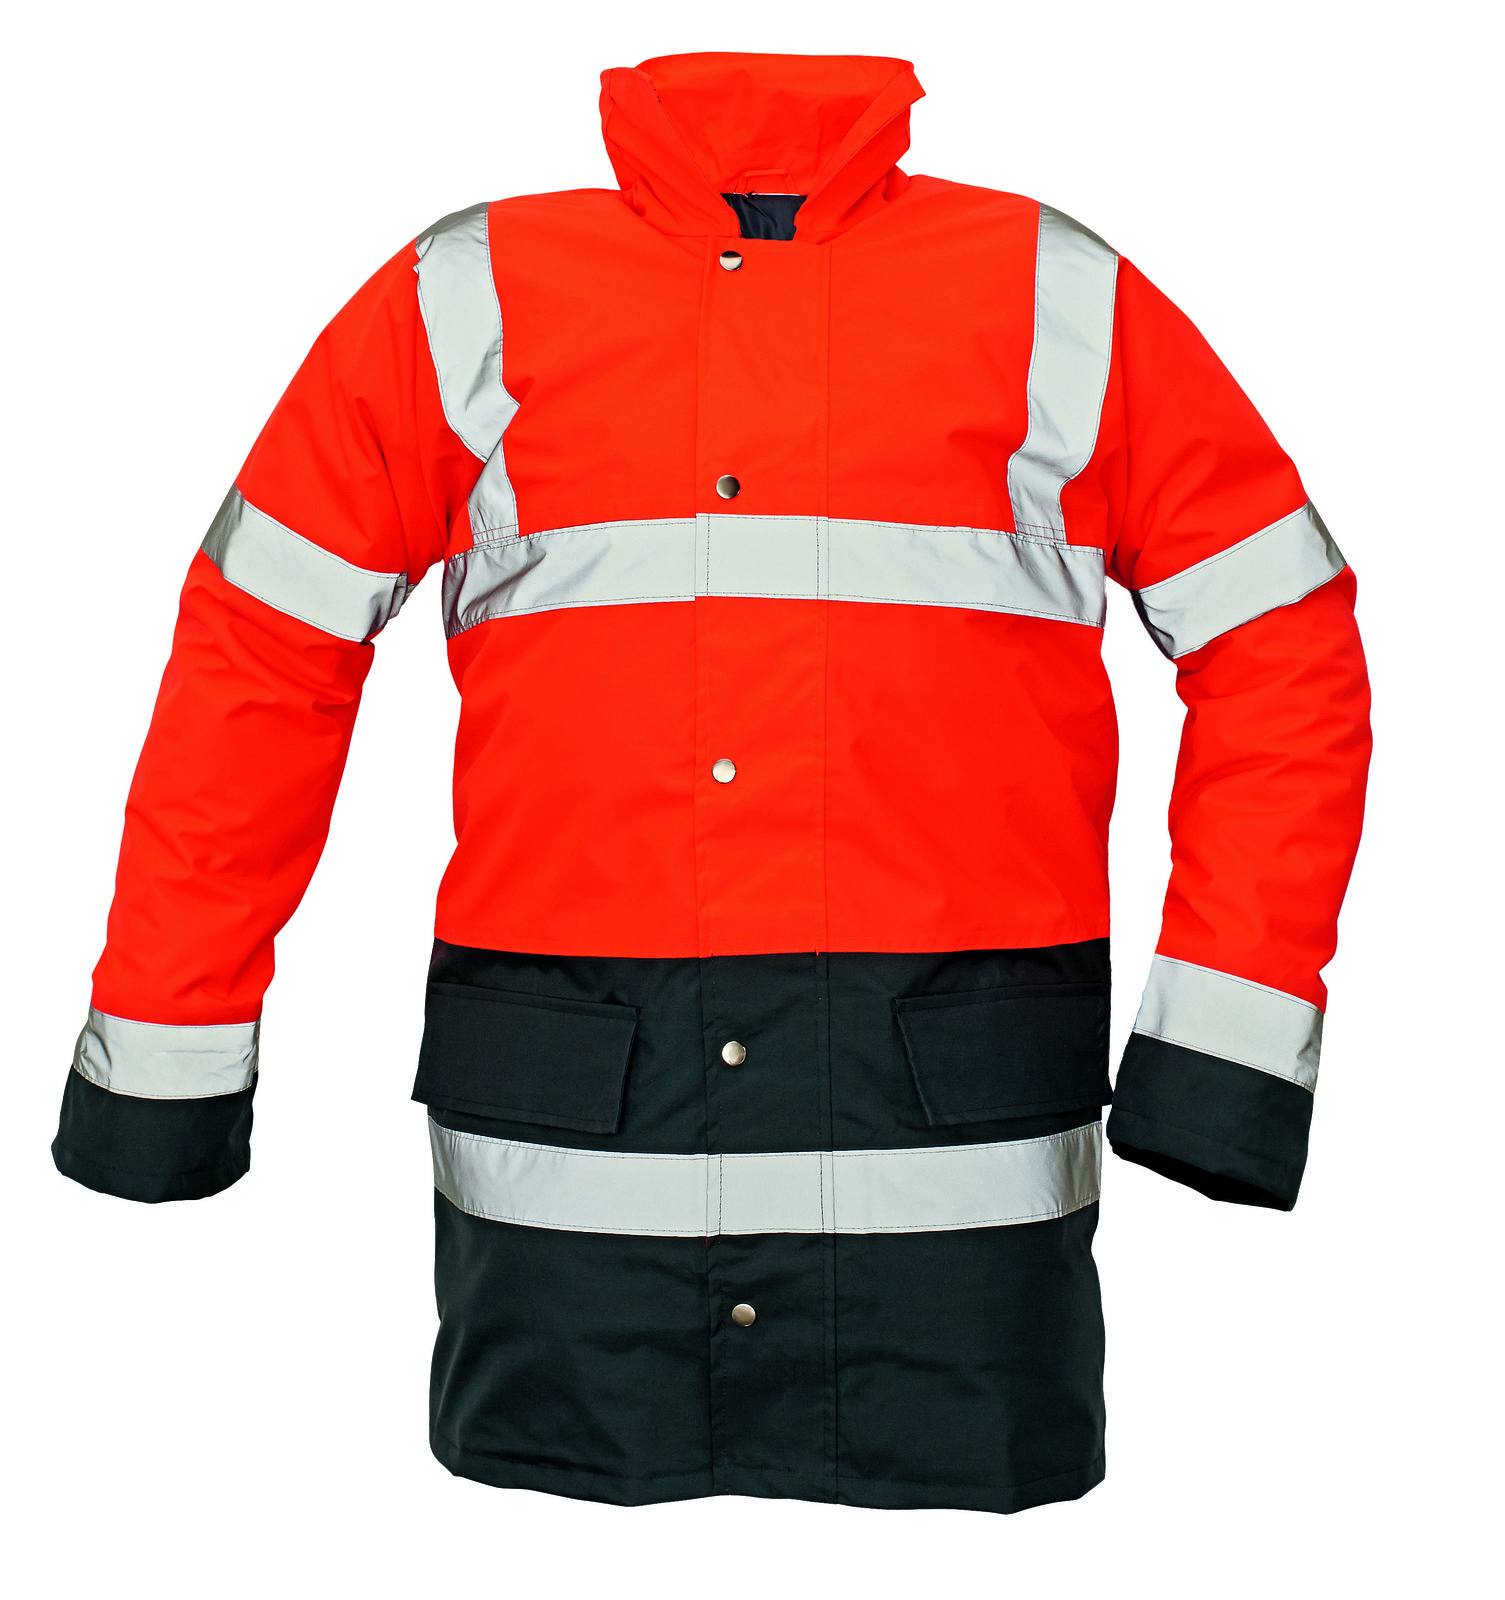 Ľahká zateplená reflexná bunda Sefton - veľkosť: M, farba: červená/navy